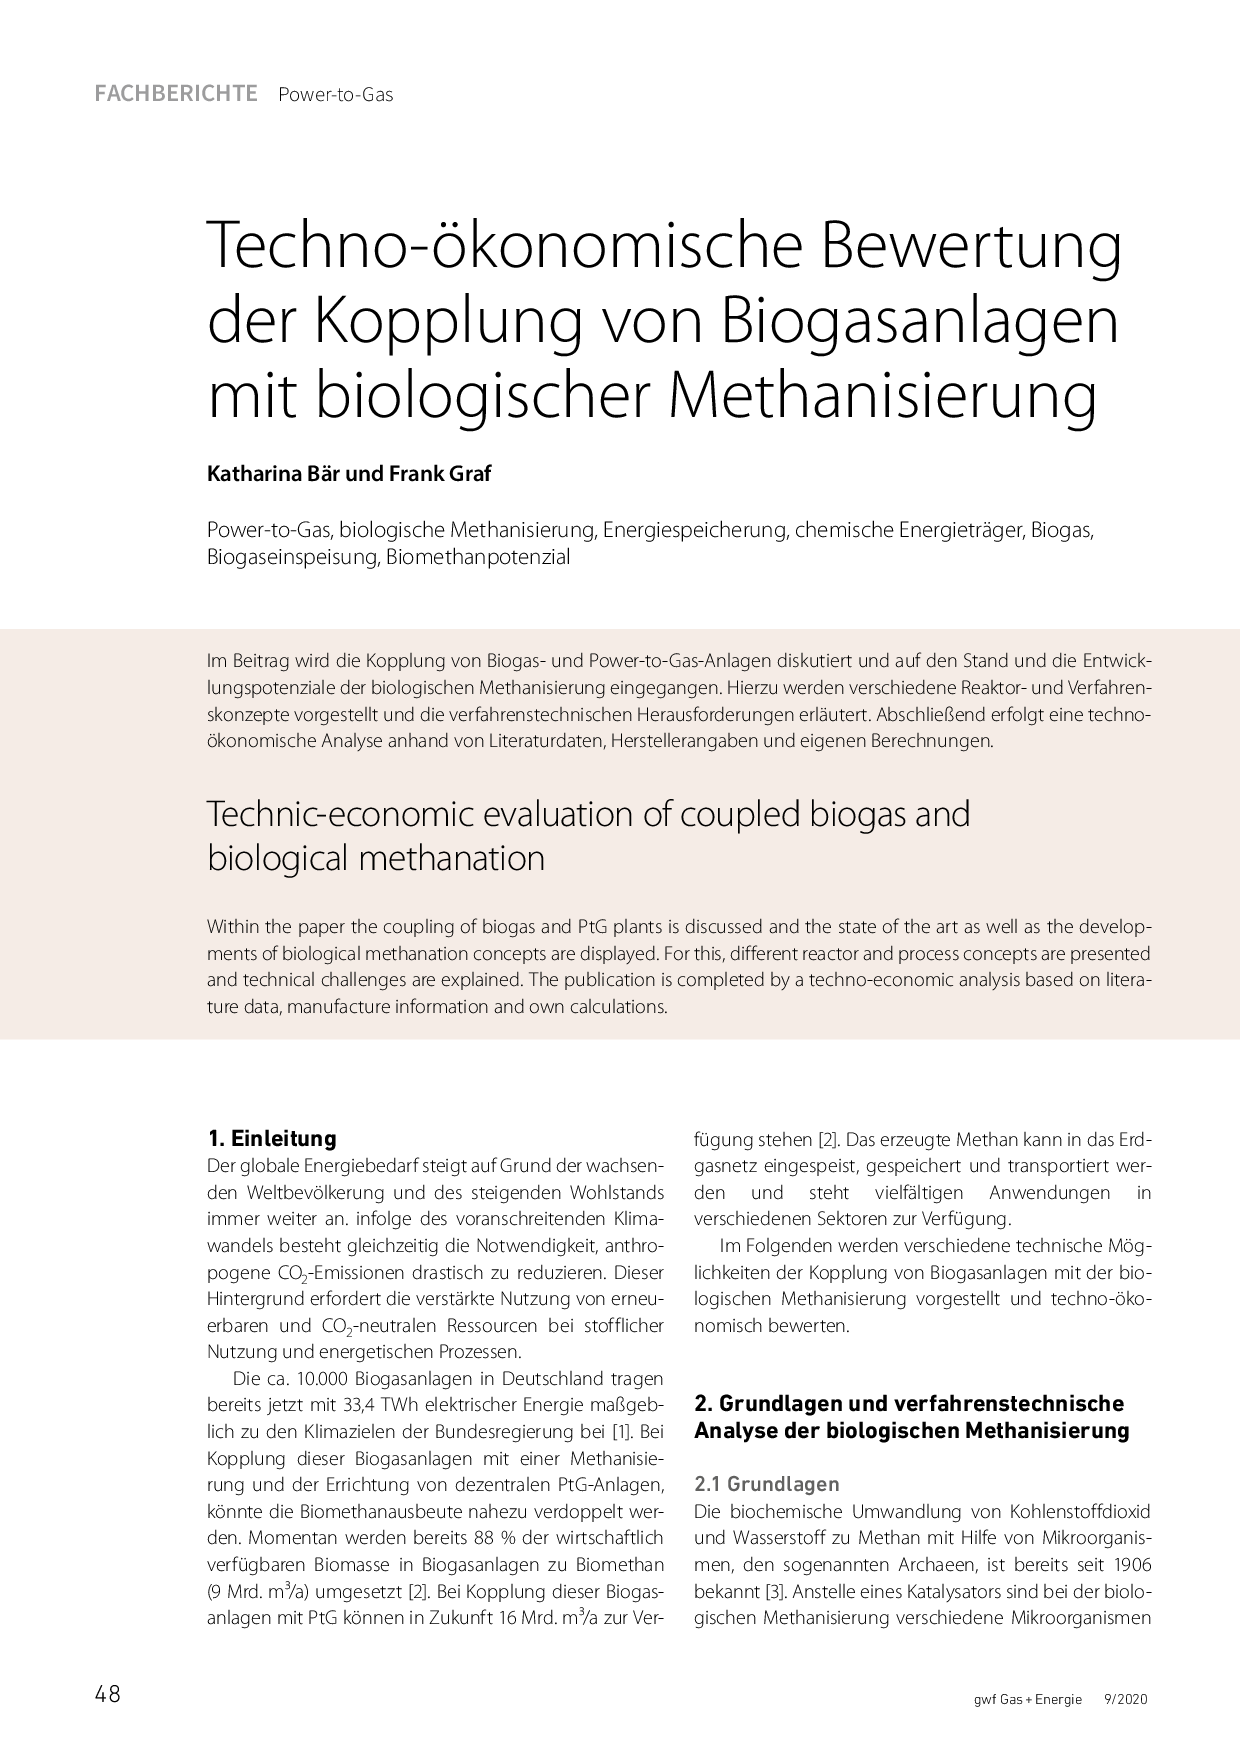 Techno-ökonomische Bewertung der Kopplung von Biogasanlagen mit biologischer Methanisierung